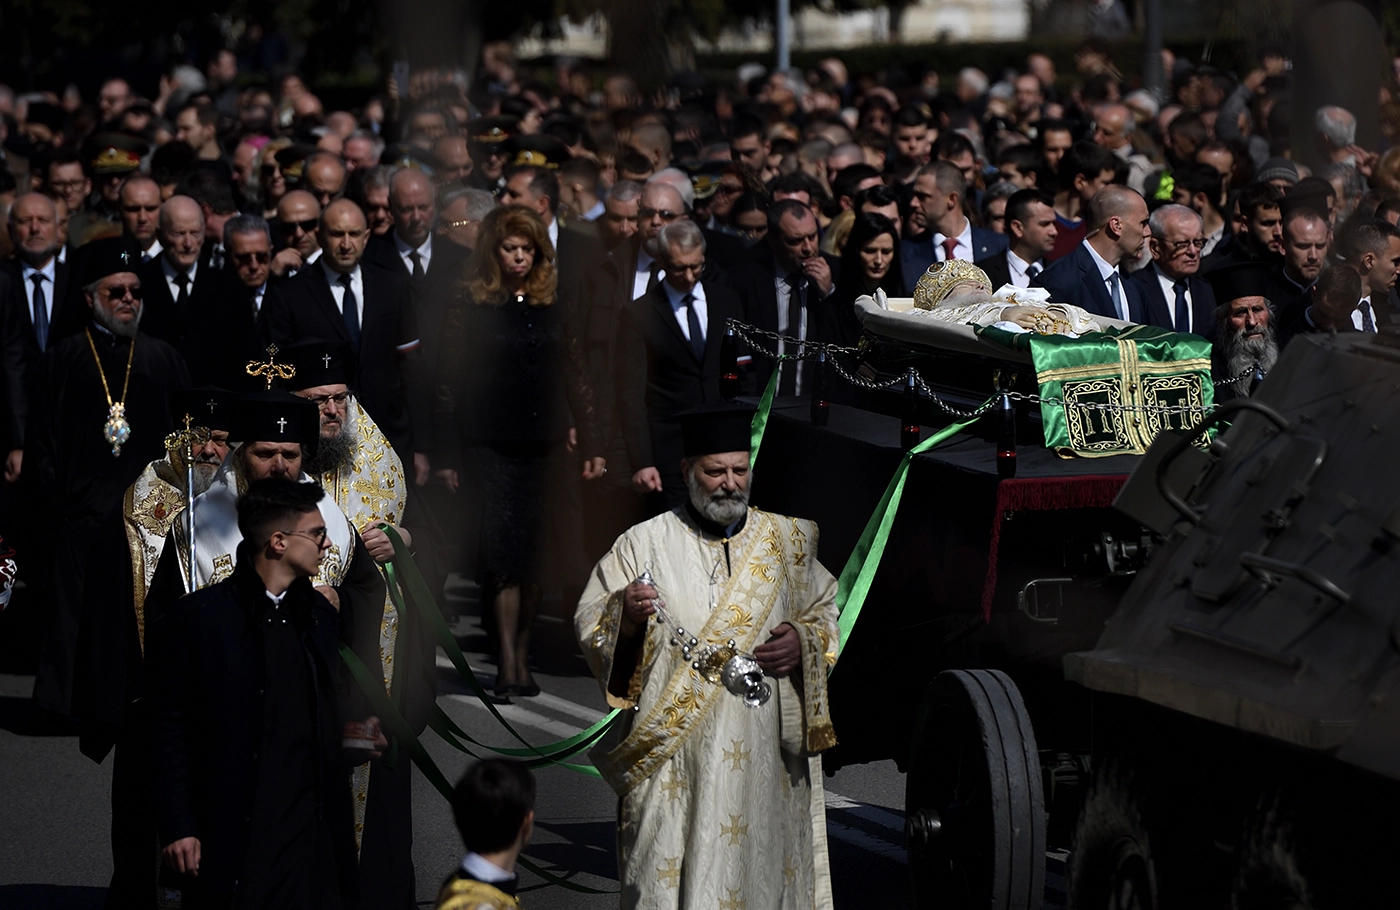 Похороны патриарха Болгарской православной церкви Неофита в Софии. Фото дня